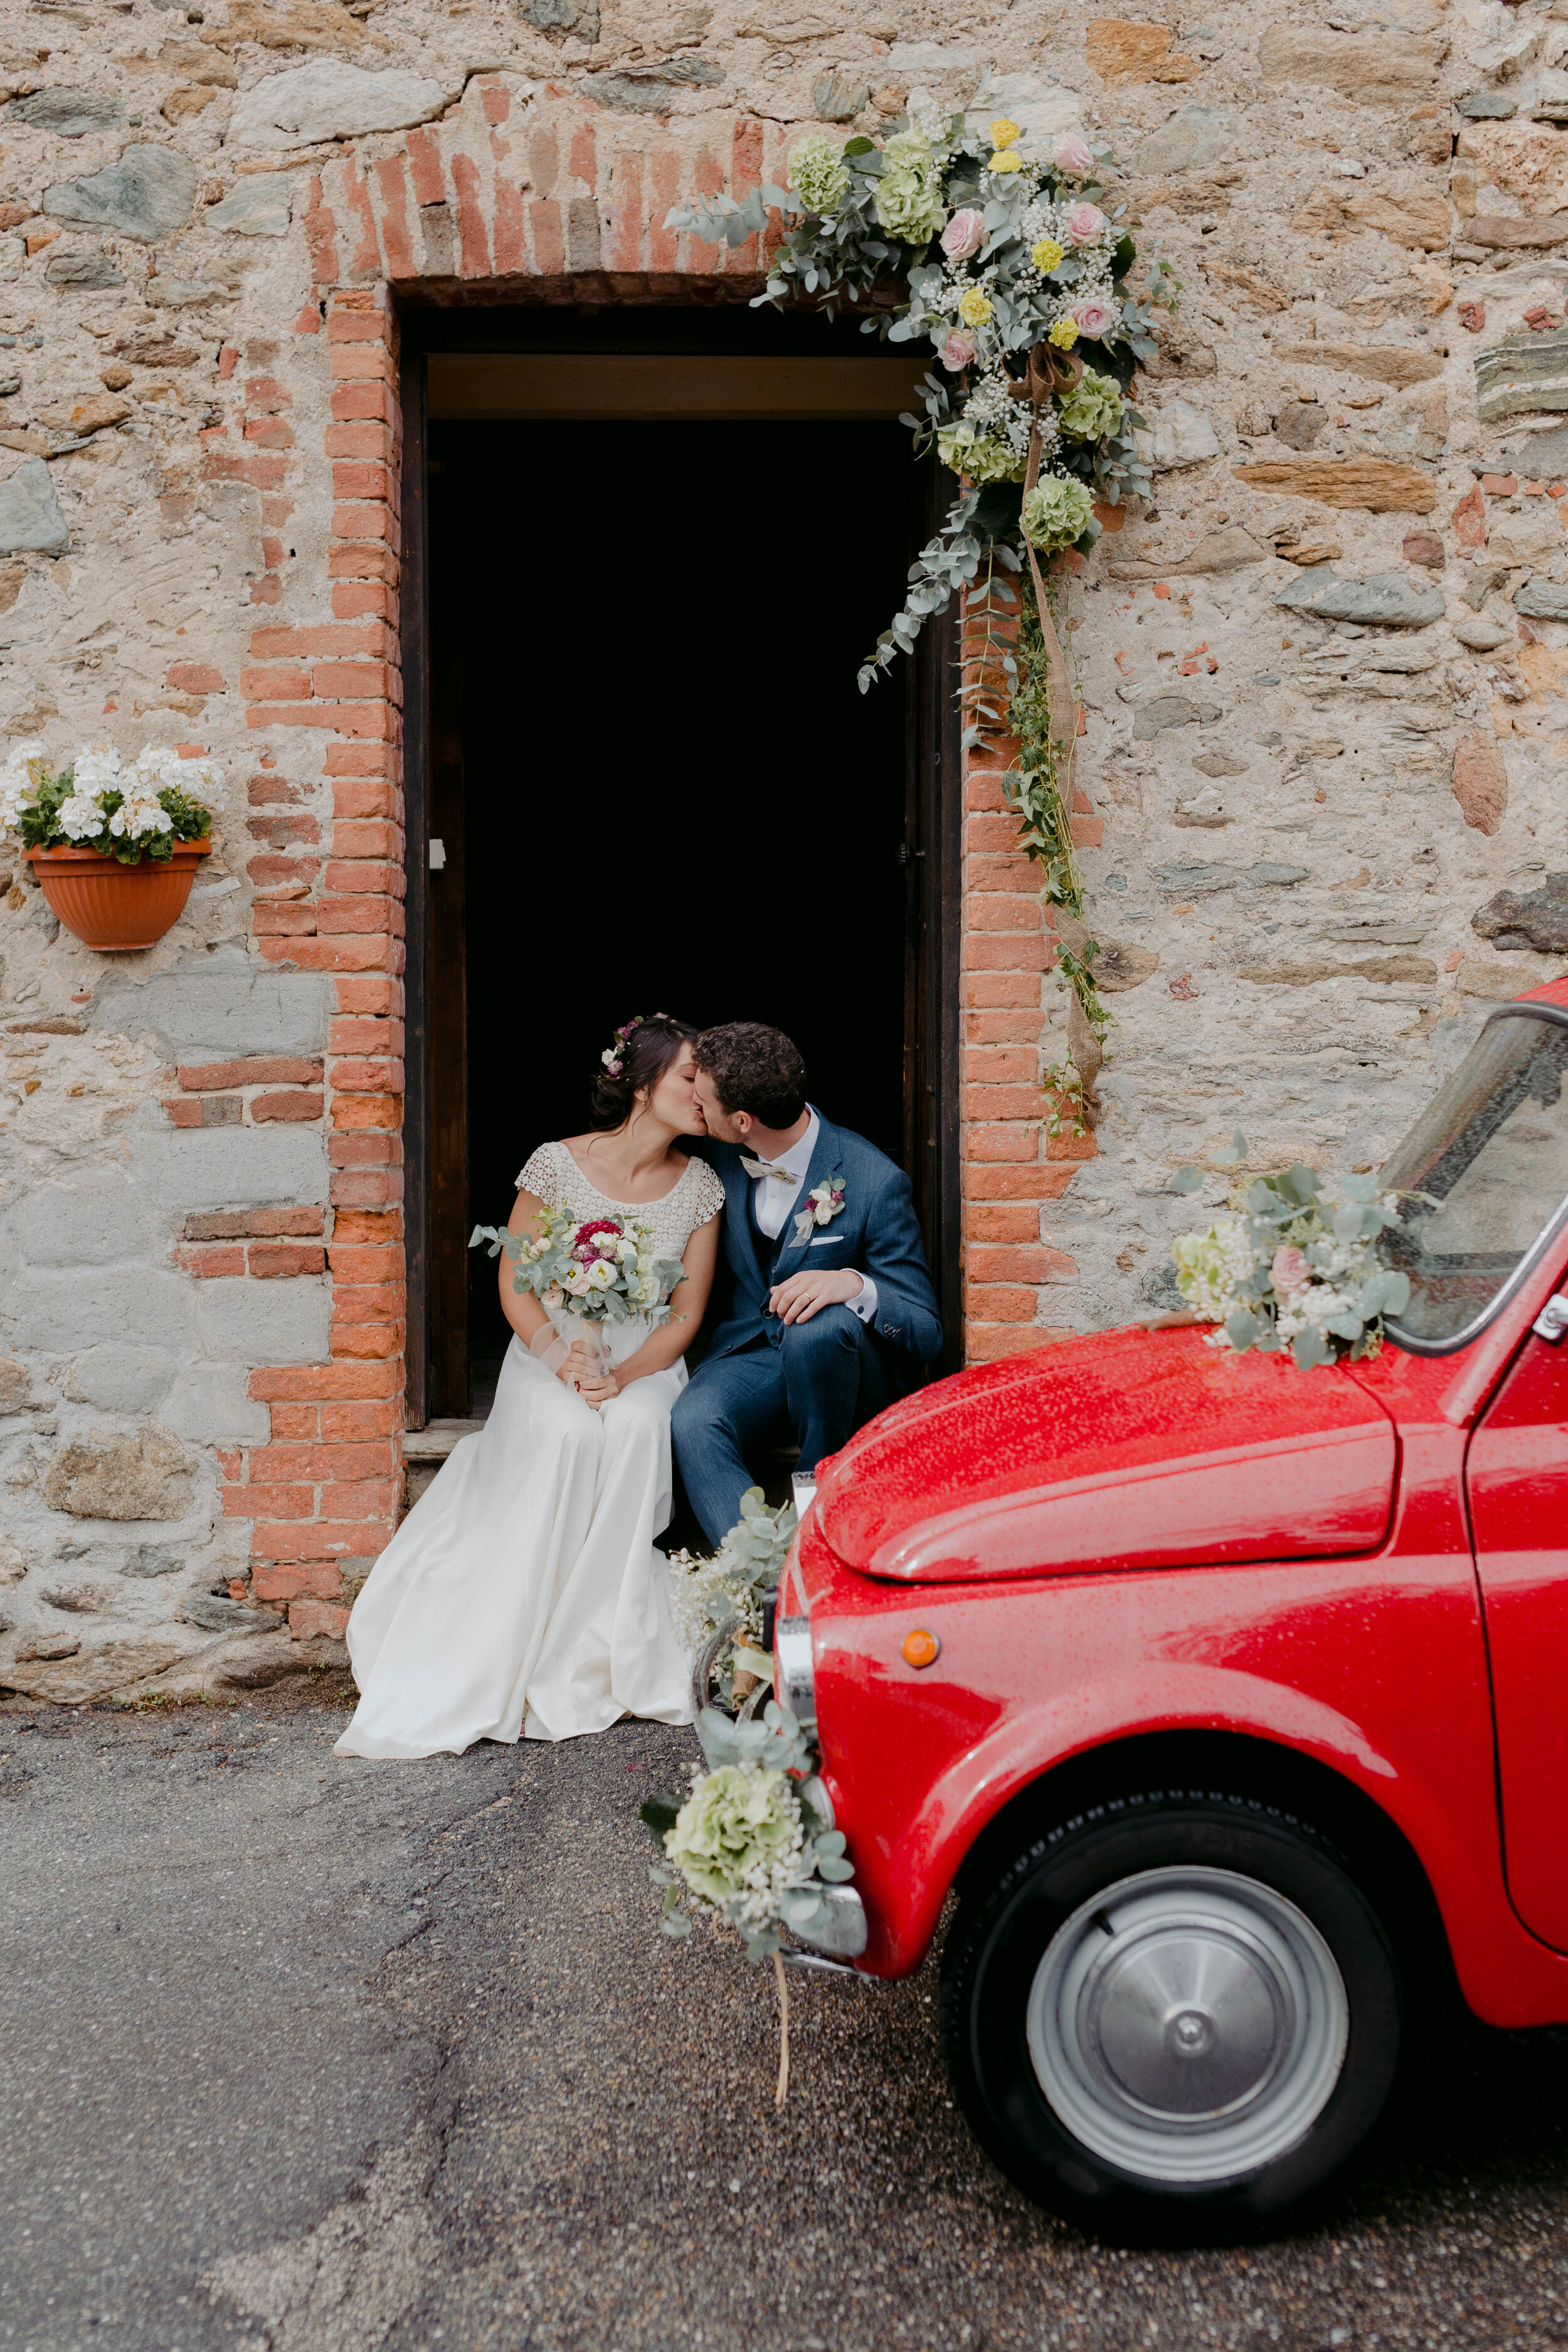 054 - Matrimonio in provincia di Cuneo - Miriam Callegari Fotografa.JPG